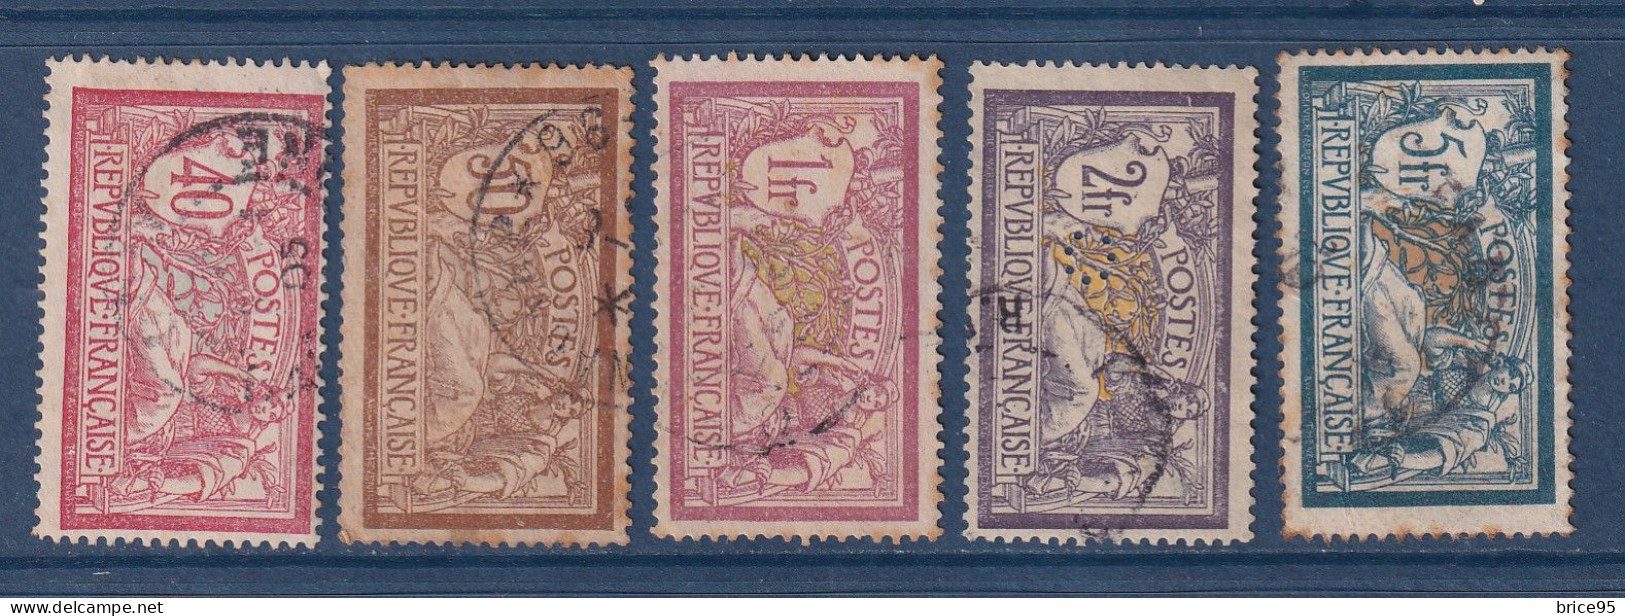 France - YT N° 119 à 123 - Oblitéré - 1900 - Used Stamps